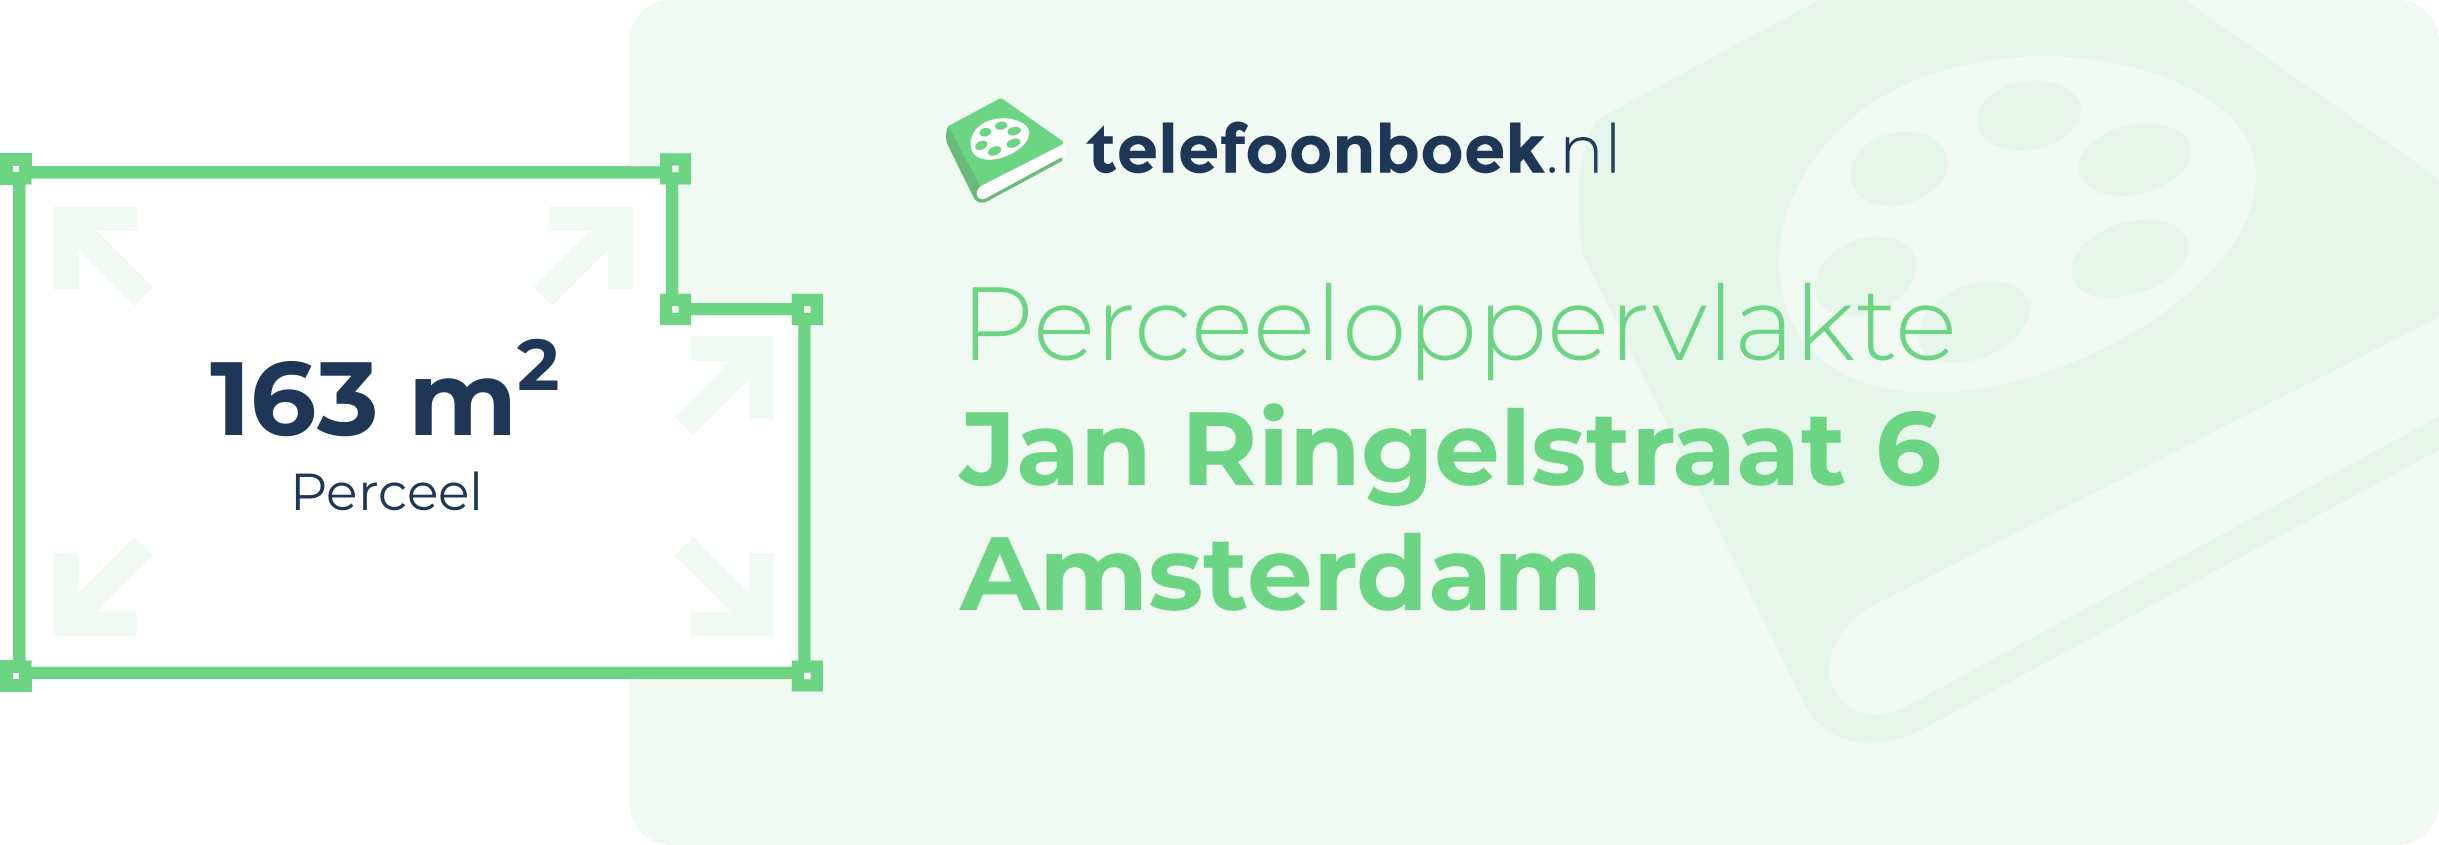 Perceeloppervlakte Jan Ringelstraat 6 Amsterdam